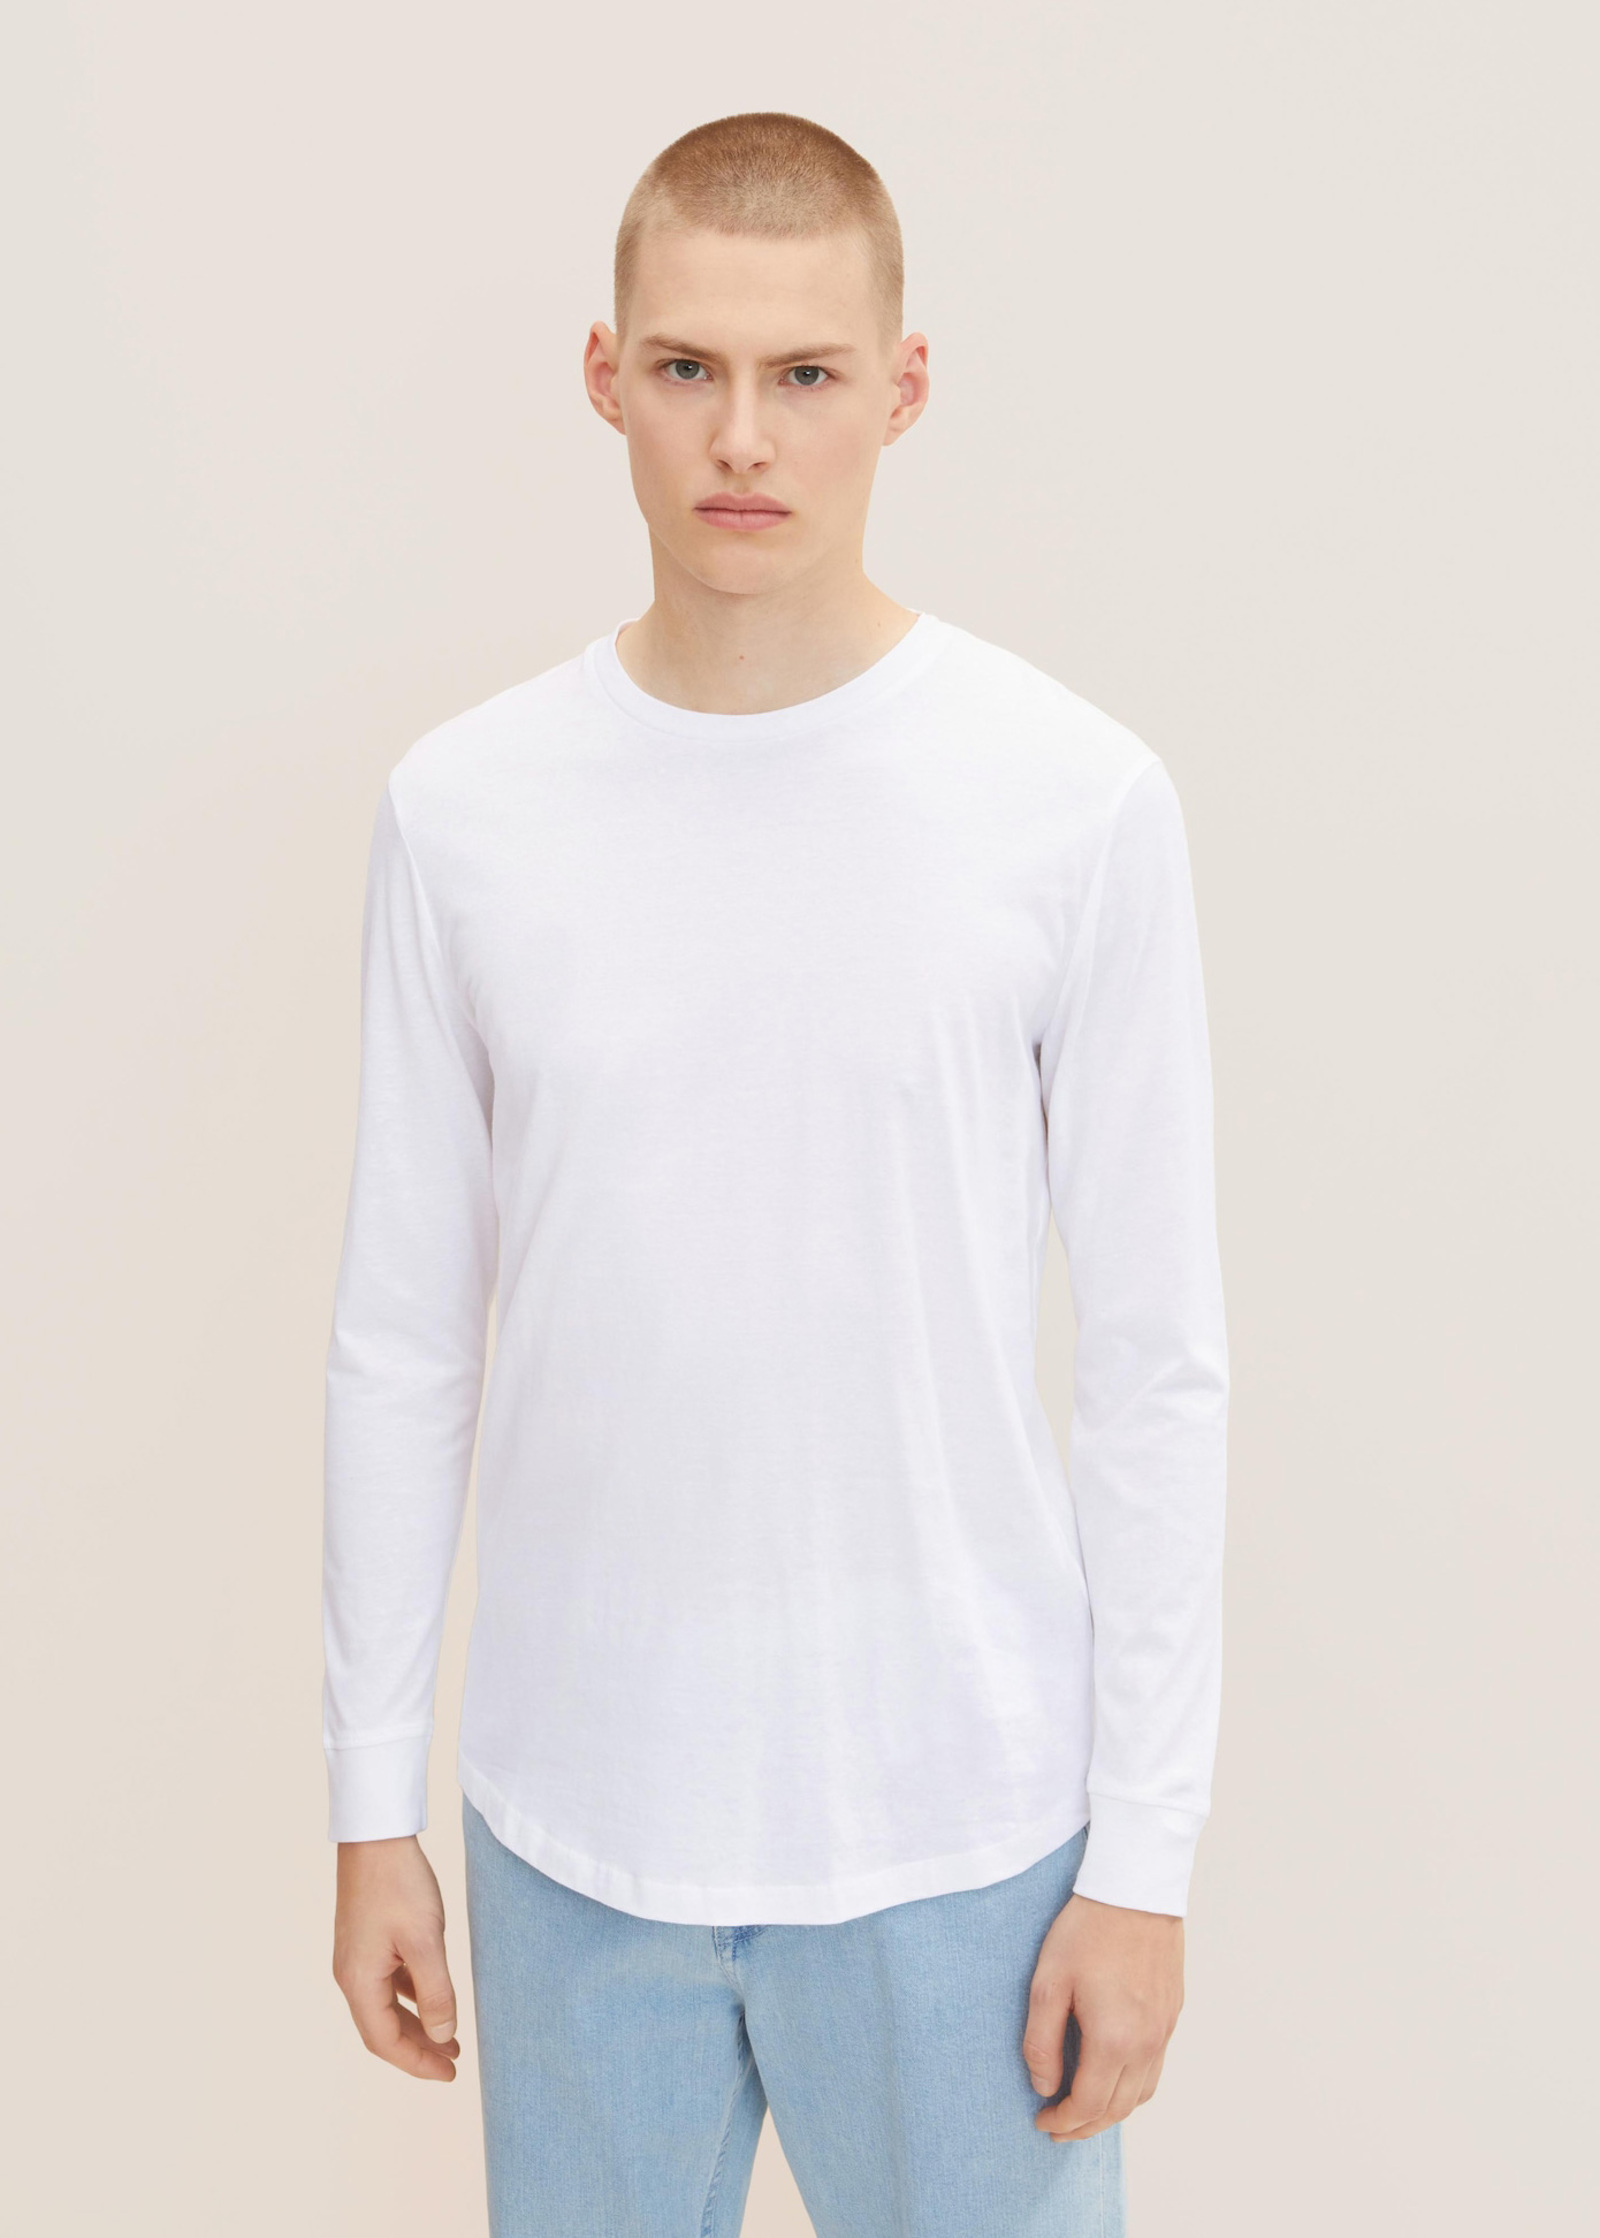 L White Long-sleeved Denim Basic Shirt Size - Tom Tailor®